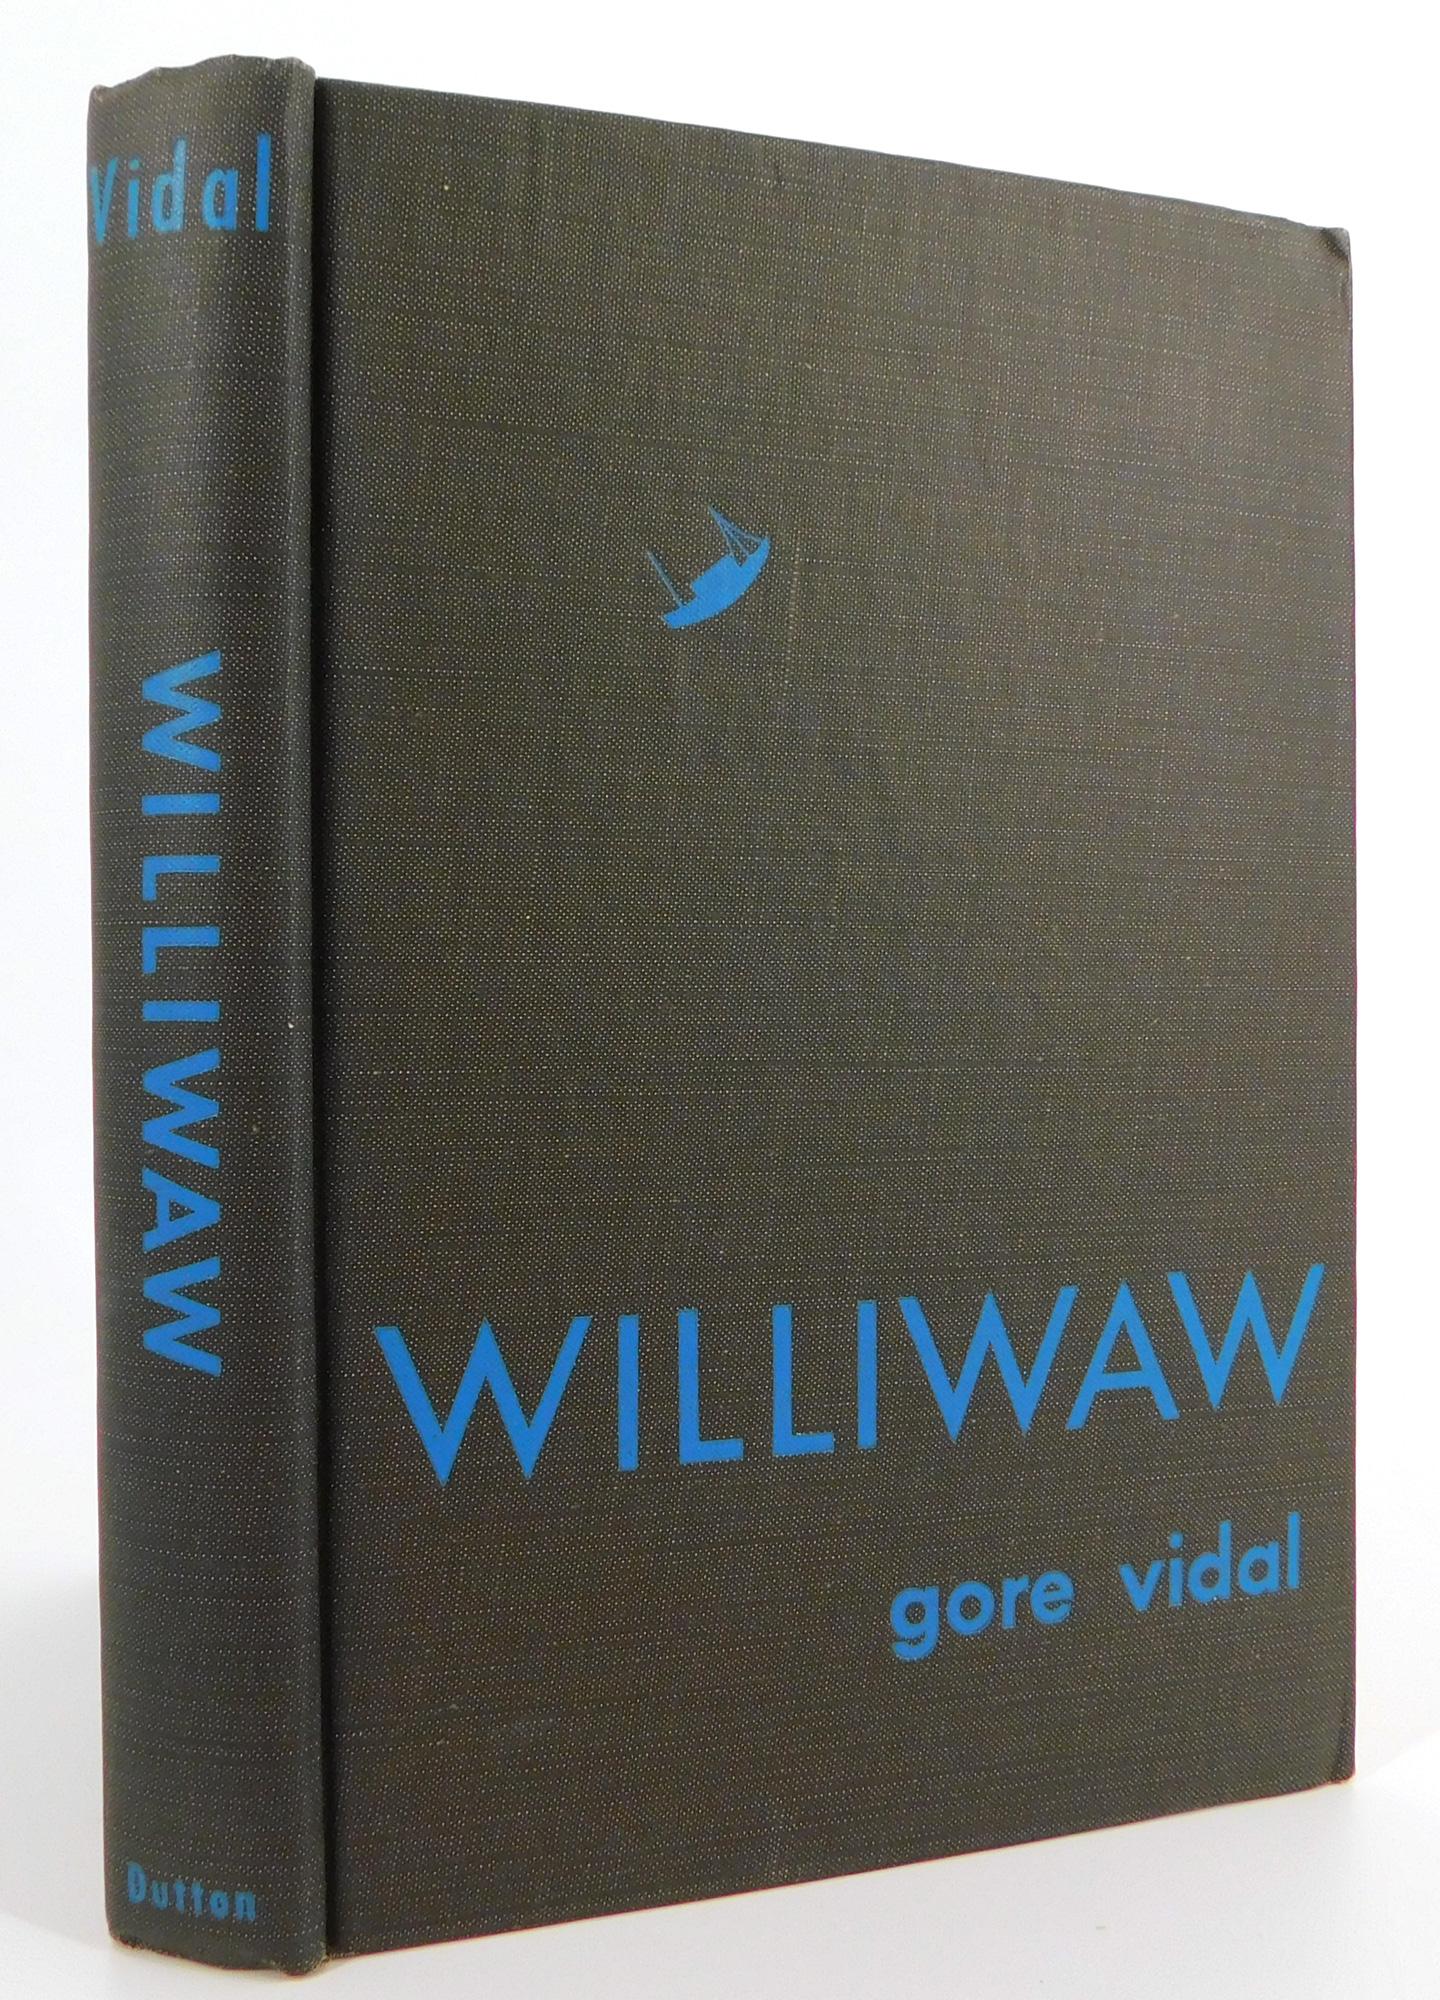 Le premier roman de GORE VIDAL « Williwaw », ÉDITION LA PLUS NUMÉROIRE en vente 1